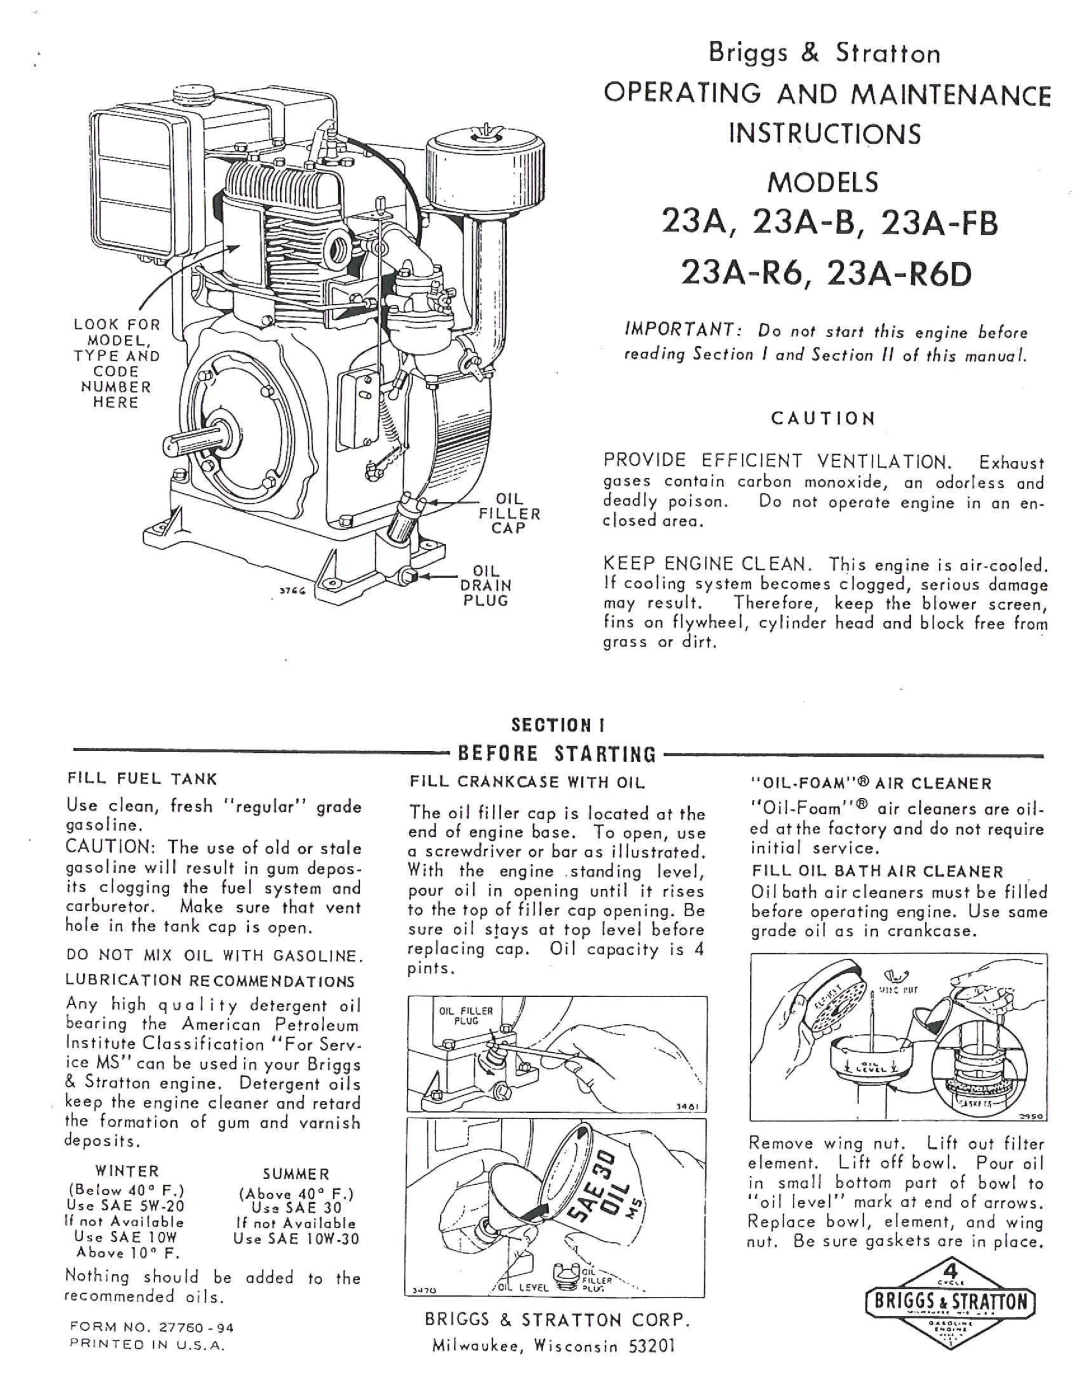 Briggs & Stratton 231-R6D, 23A-R6, 23A-FB, 23A-B manual 